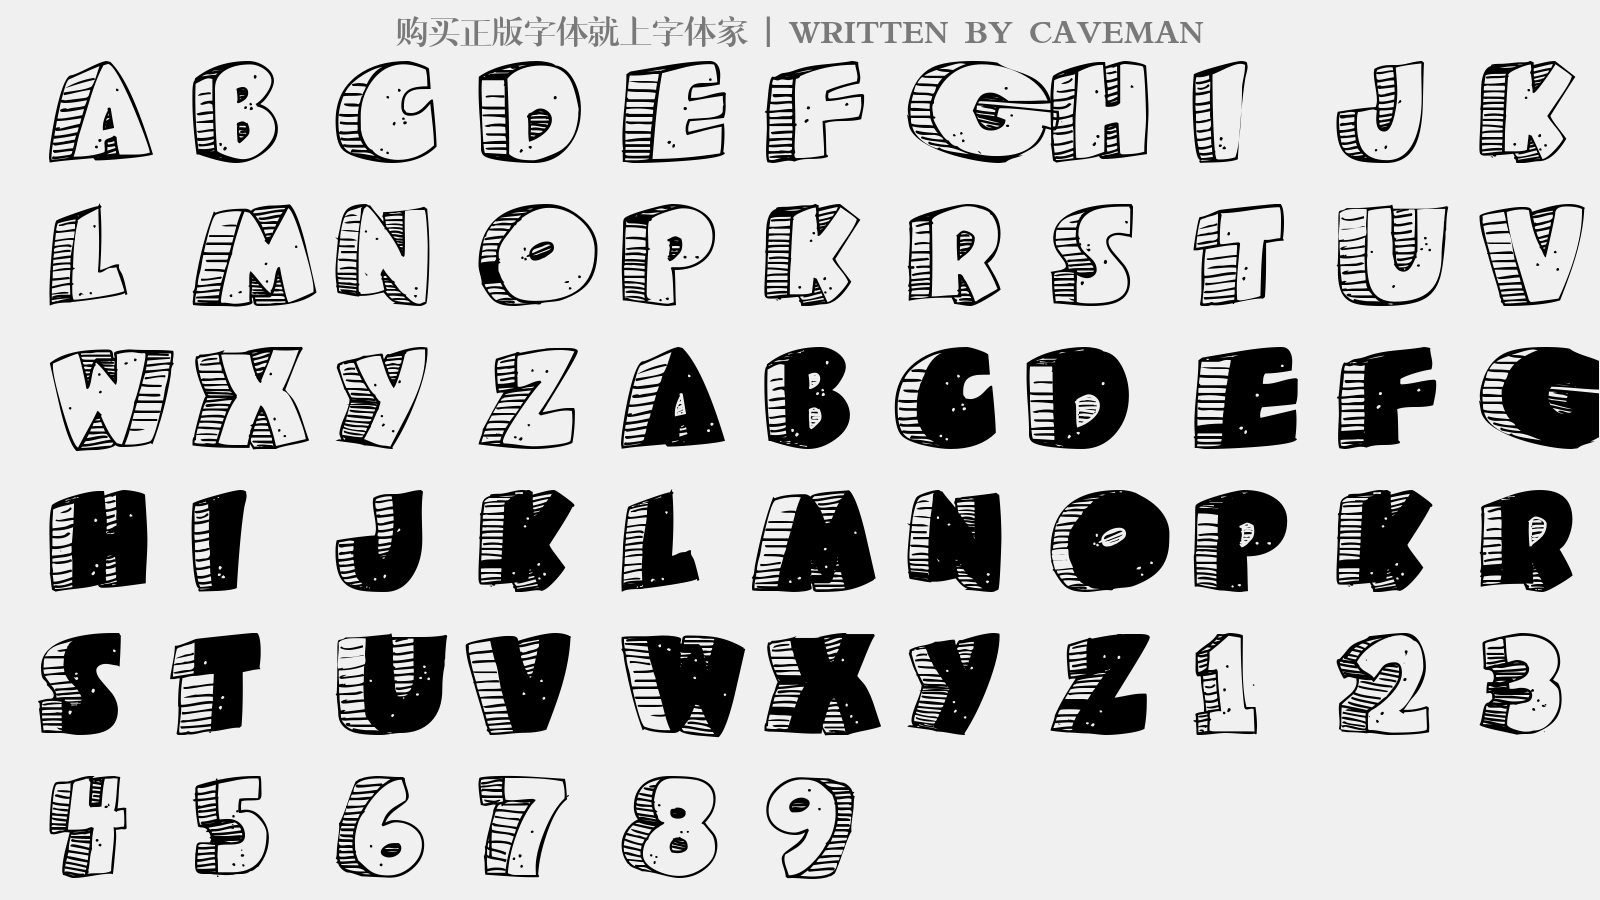 CAVEMAN - 大写字母/小写字母/数字